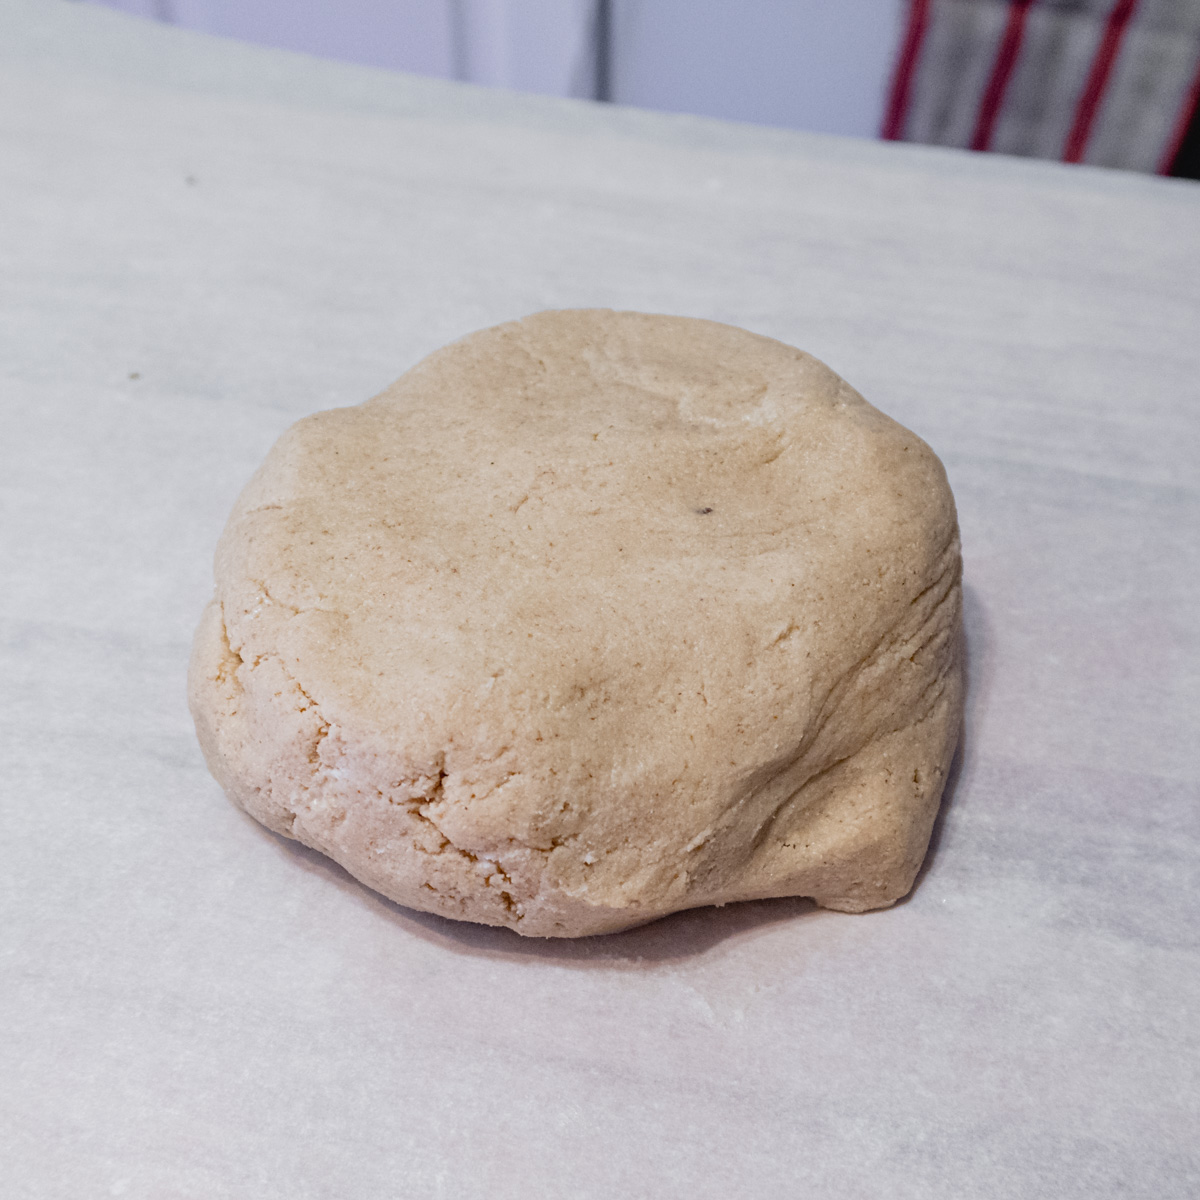 A large ball of gluten-free pâte sucrée dough on a piece of parchment paper.